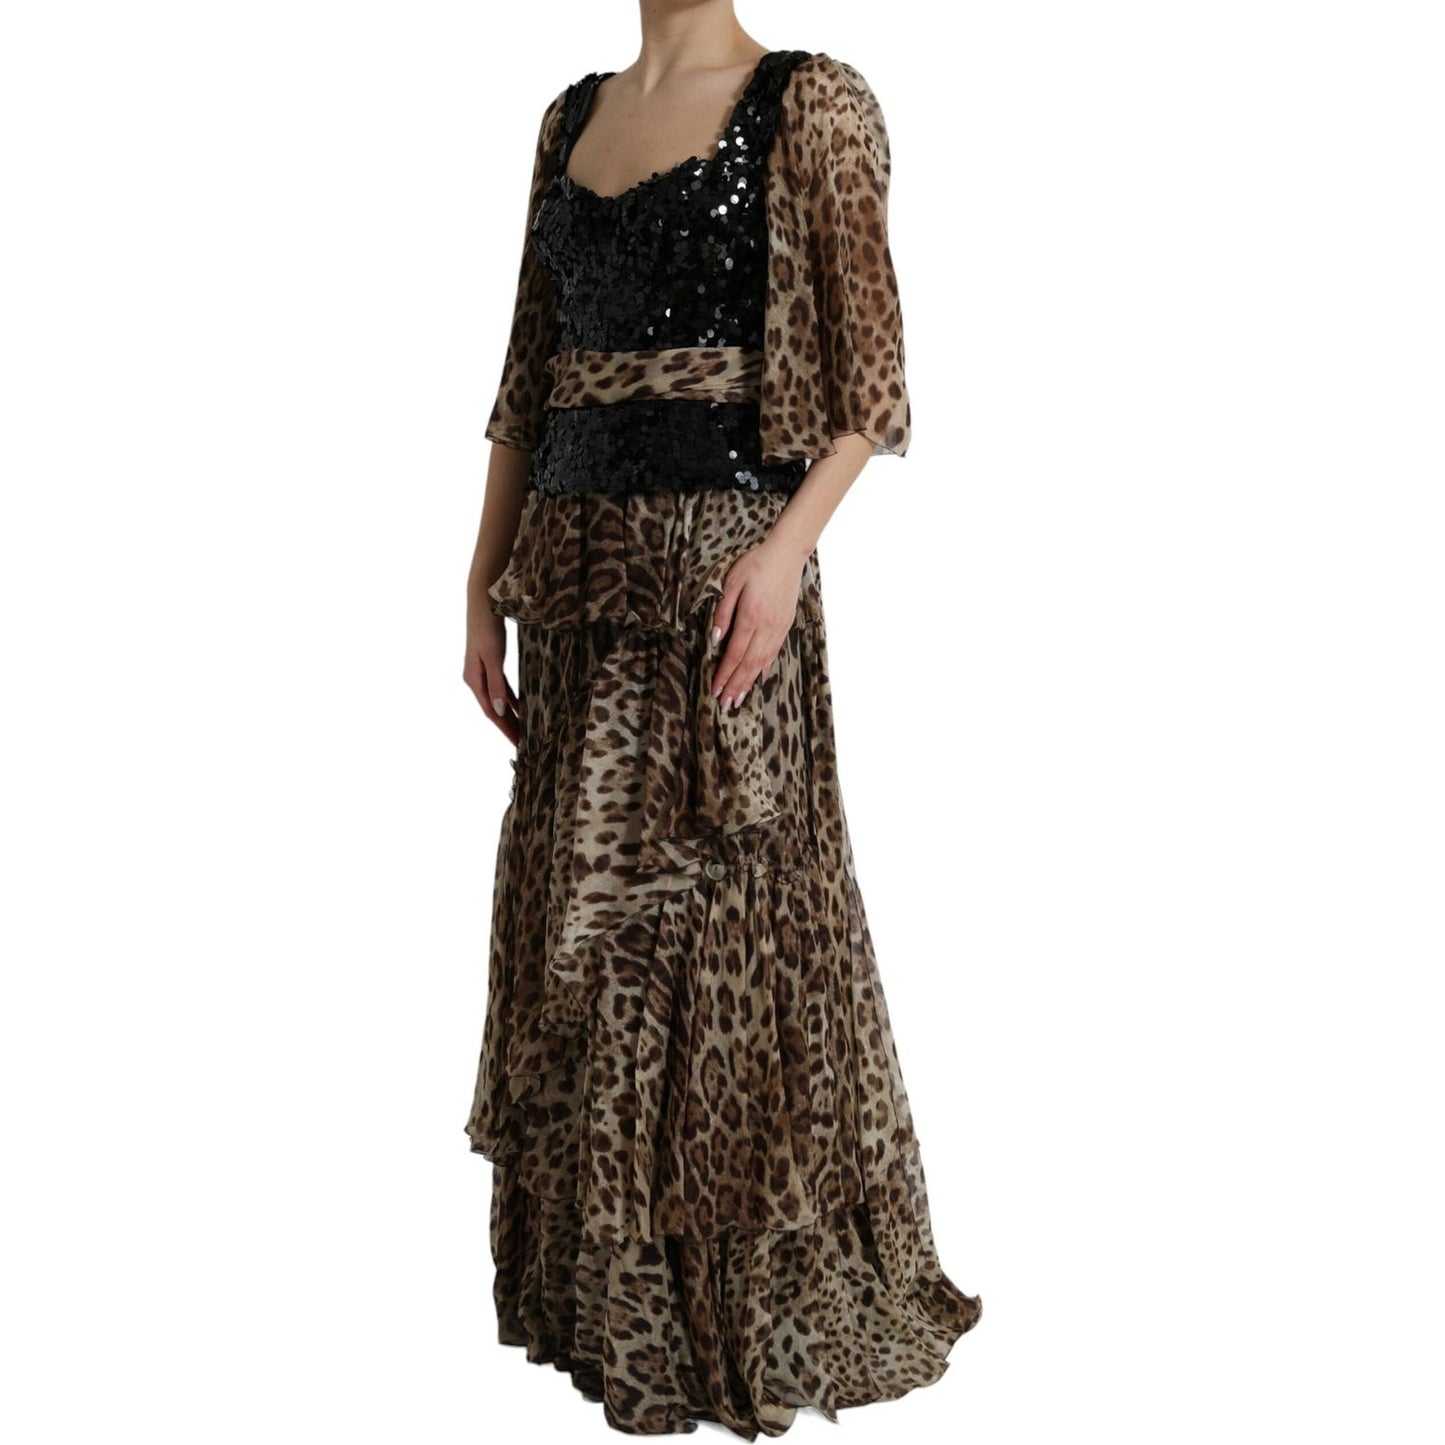 Dolce & Gabbana Elegant Leopard Sequin Tiered Dress brown-leopard-sequined-tiered-long-gown-dress